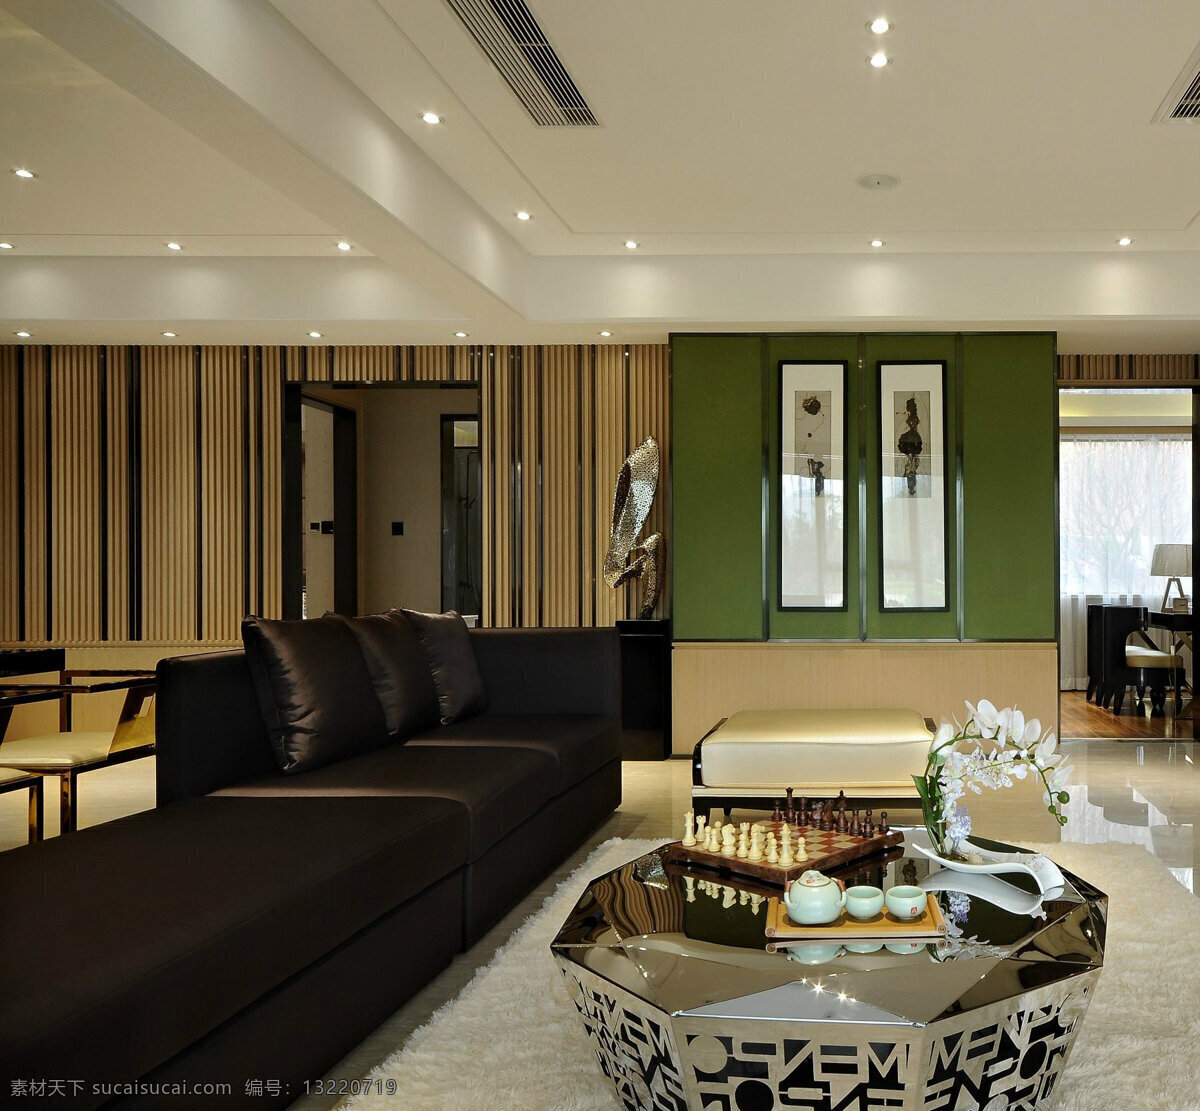 现代 时尚 金色 亮 面茶 客厅 室内装修 效果图 黑色沙发 金色茶几 白色地毯 客厅装修